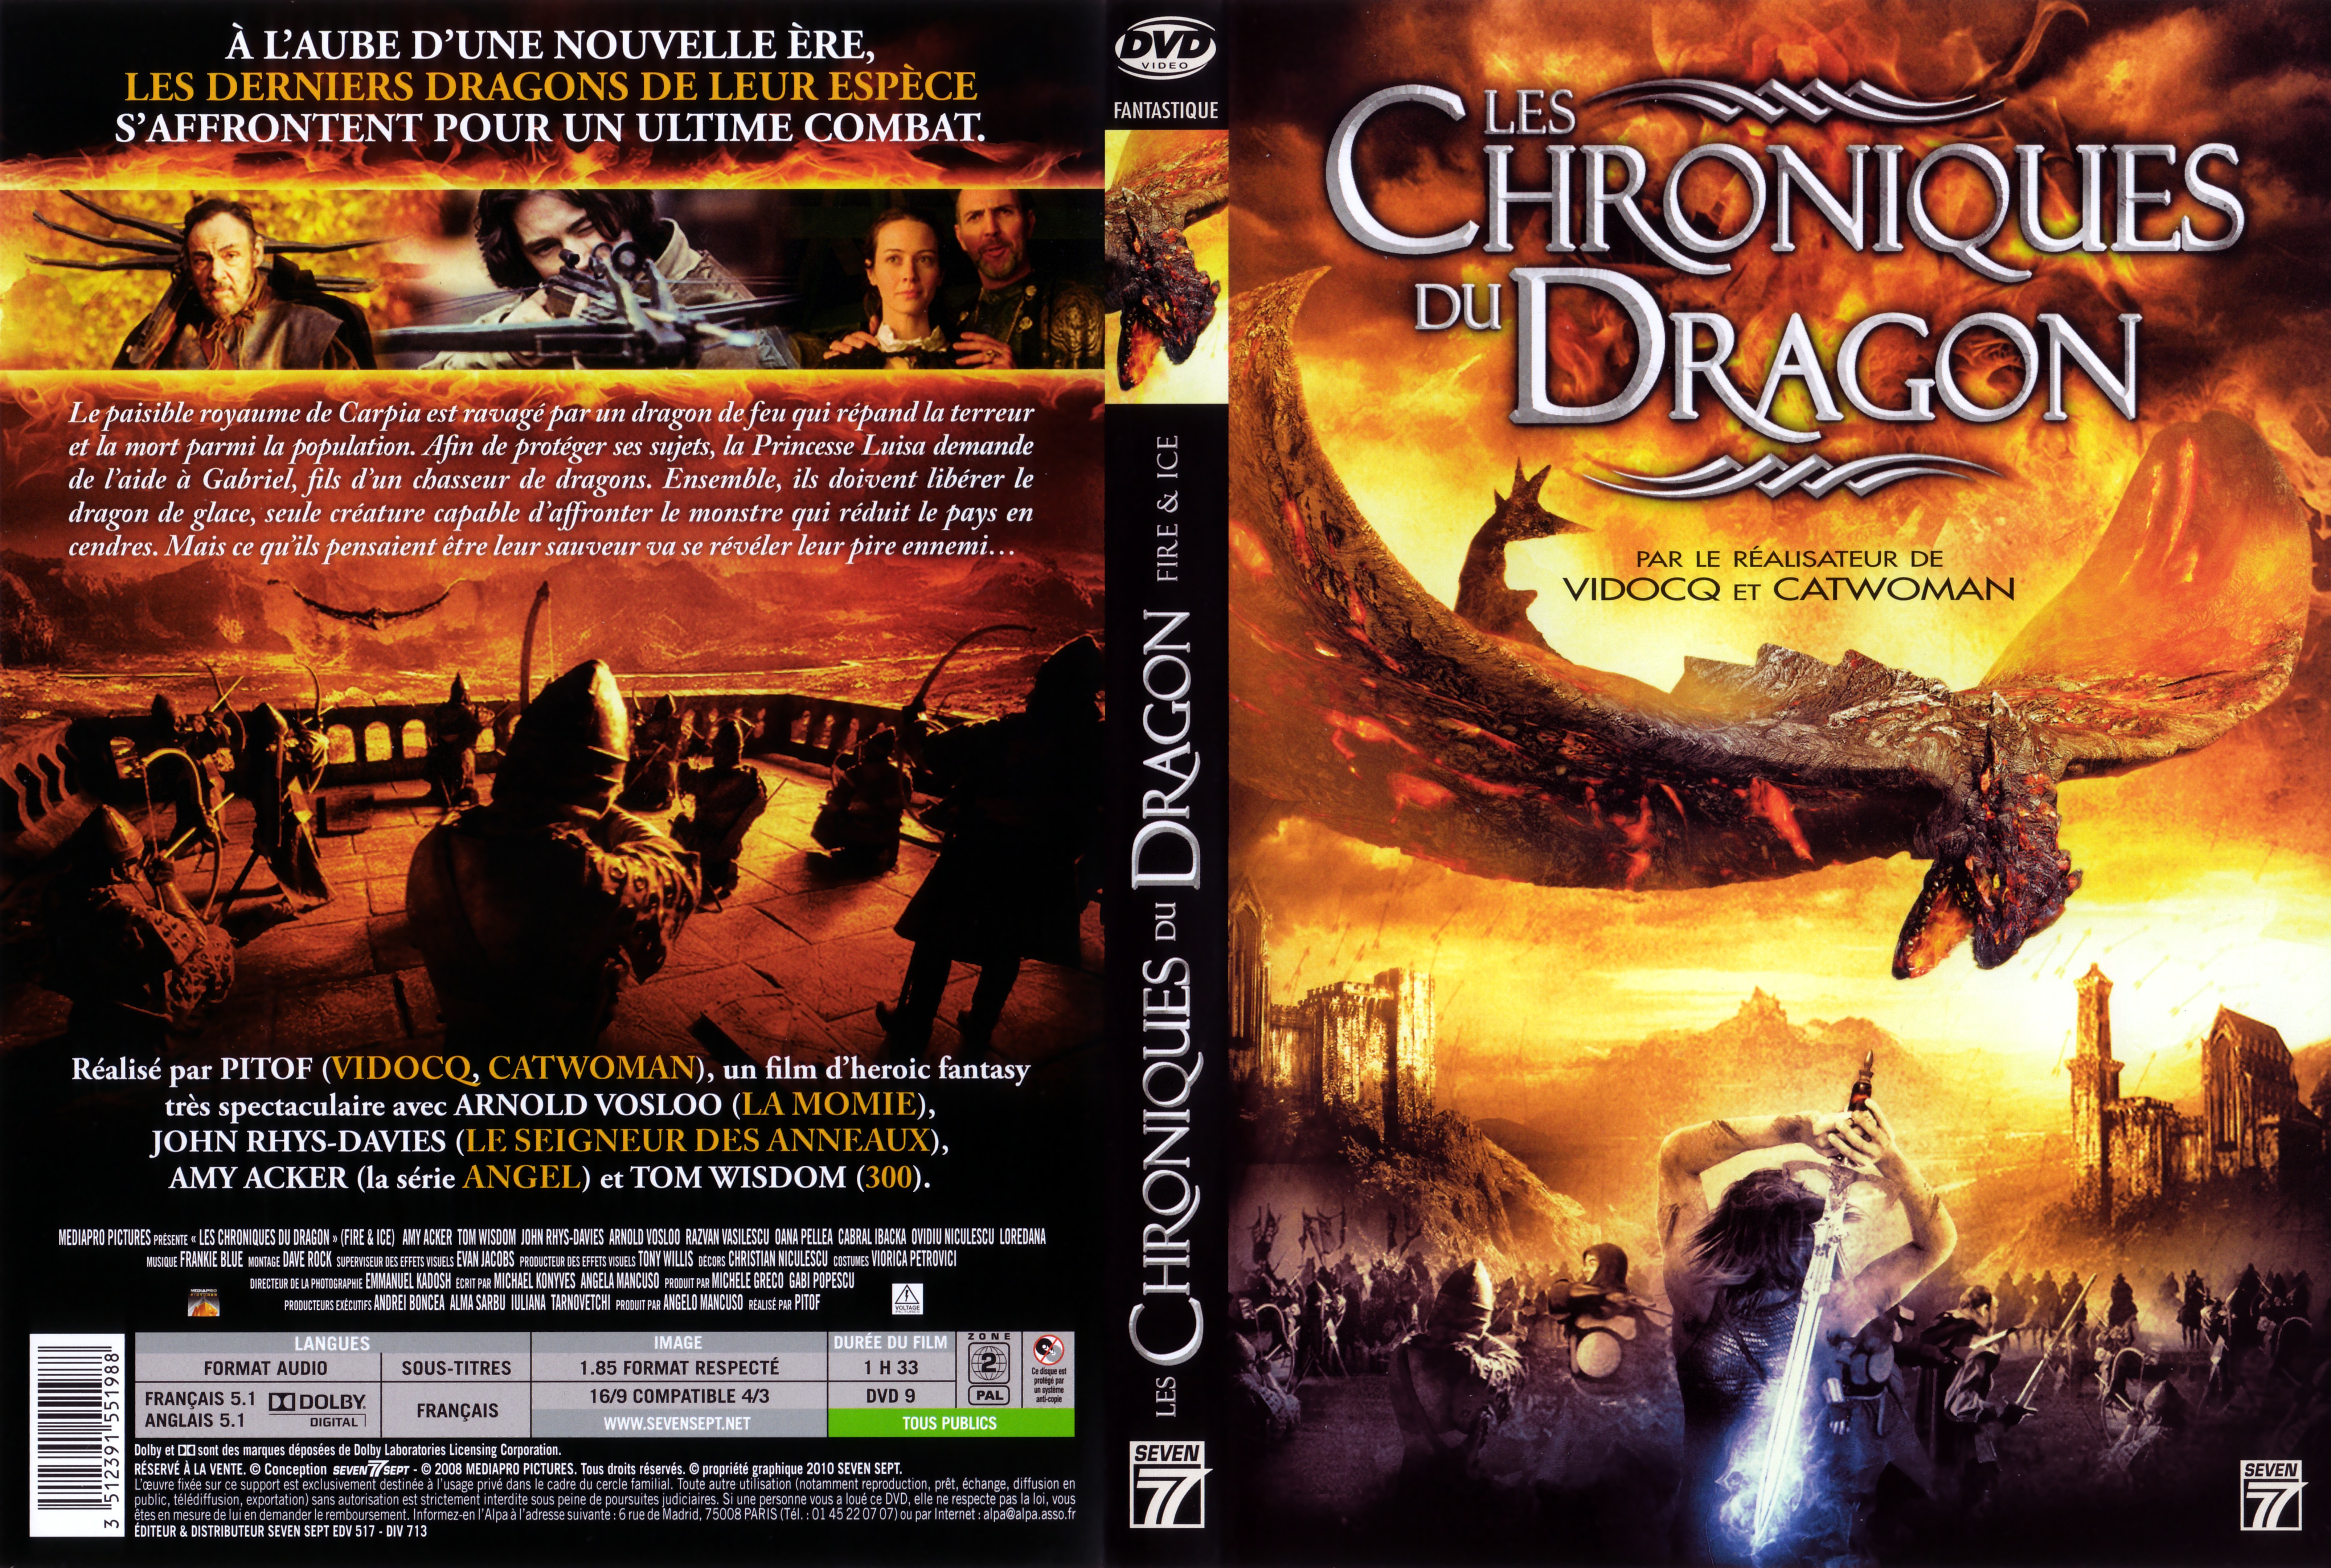 Jaquette DVD Les chroniques du dragon